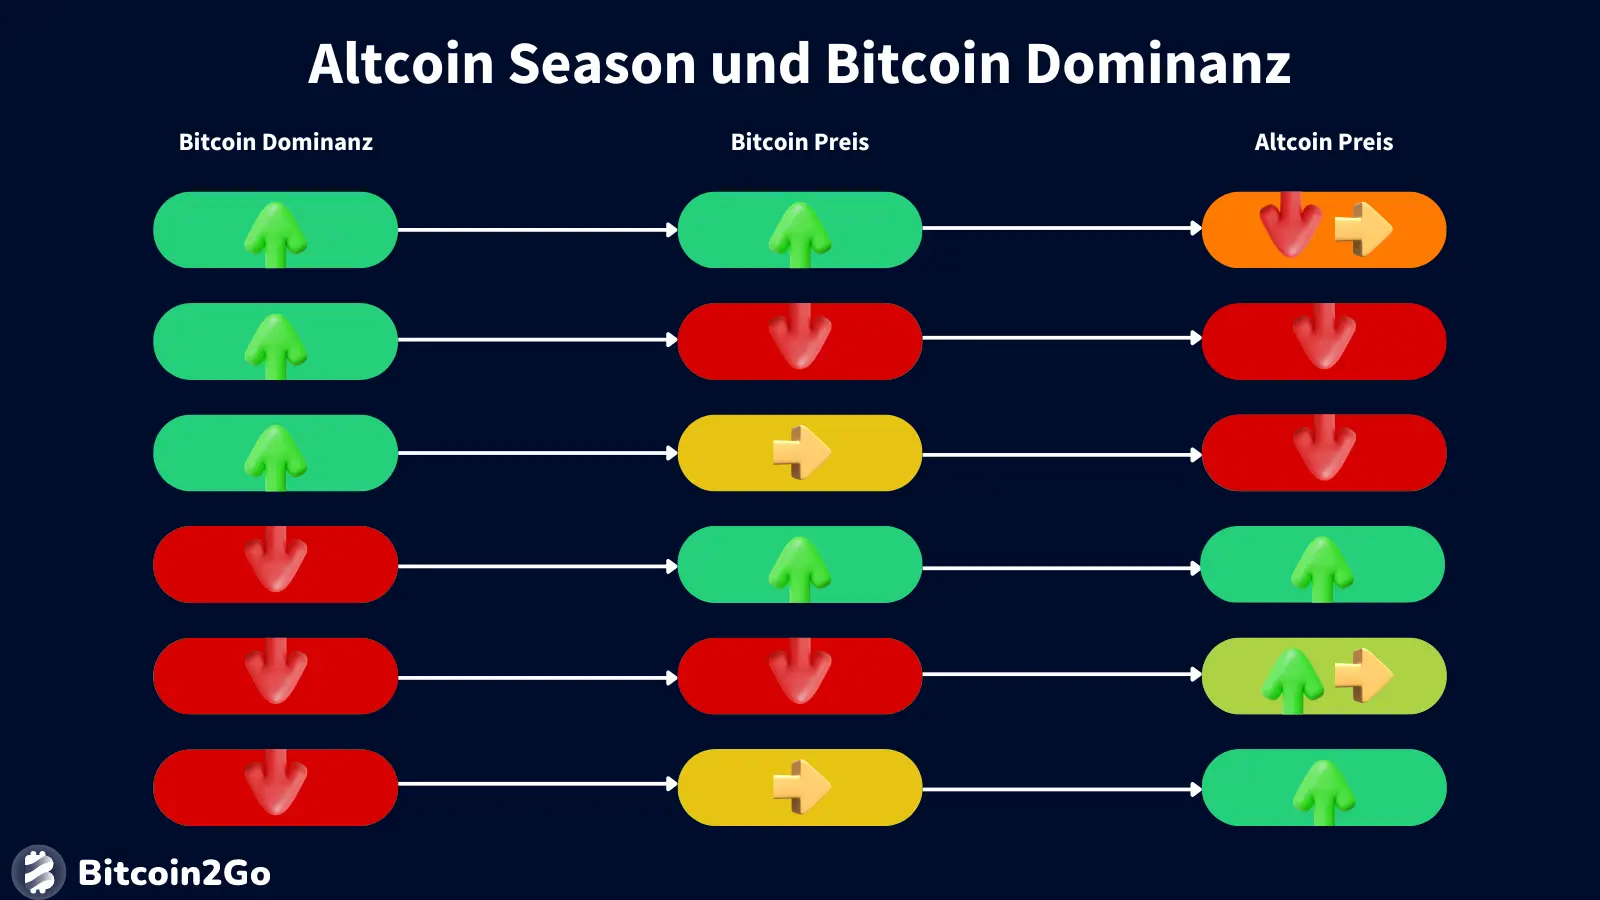 Altcoin Season und Bitcoin Dominanz: Was passiert mit den Preisen?